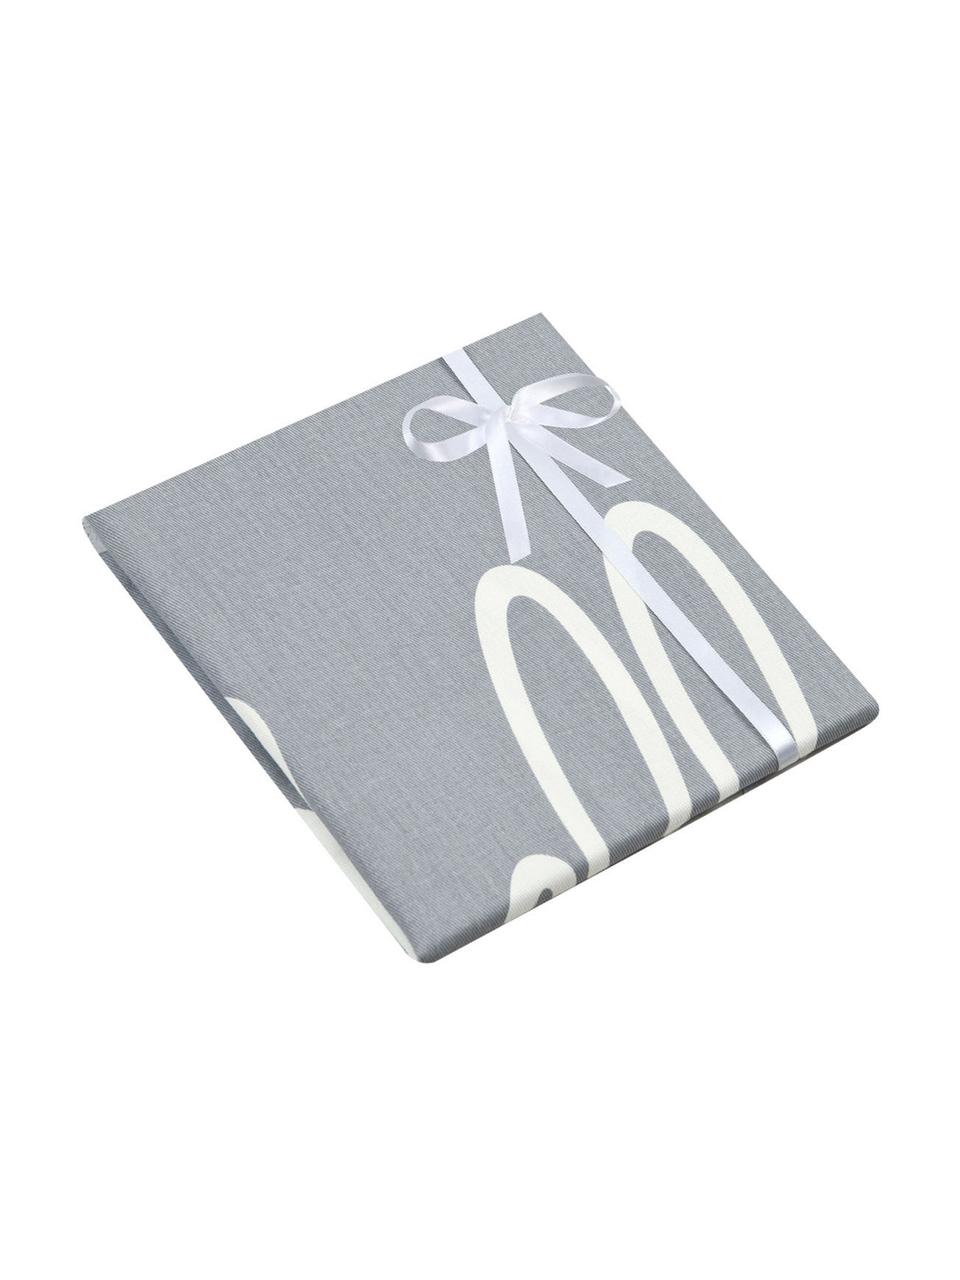 Kissenhülle Hello mit Schriftzug in Grau/Weiss, 100% Baumwolle, Panamabindung, Grau, Creme, 40 x 40 cm